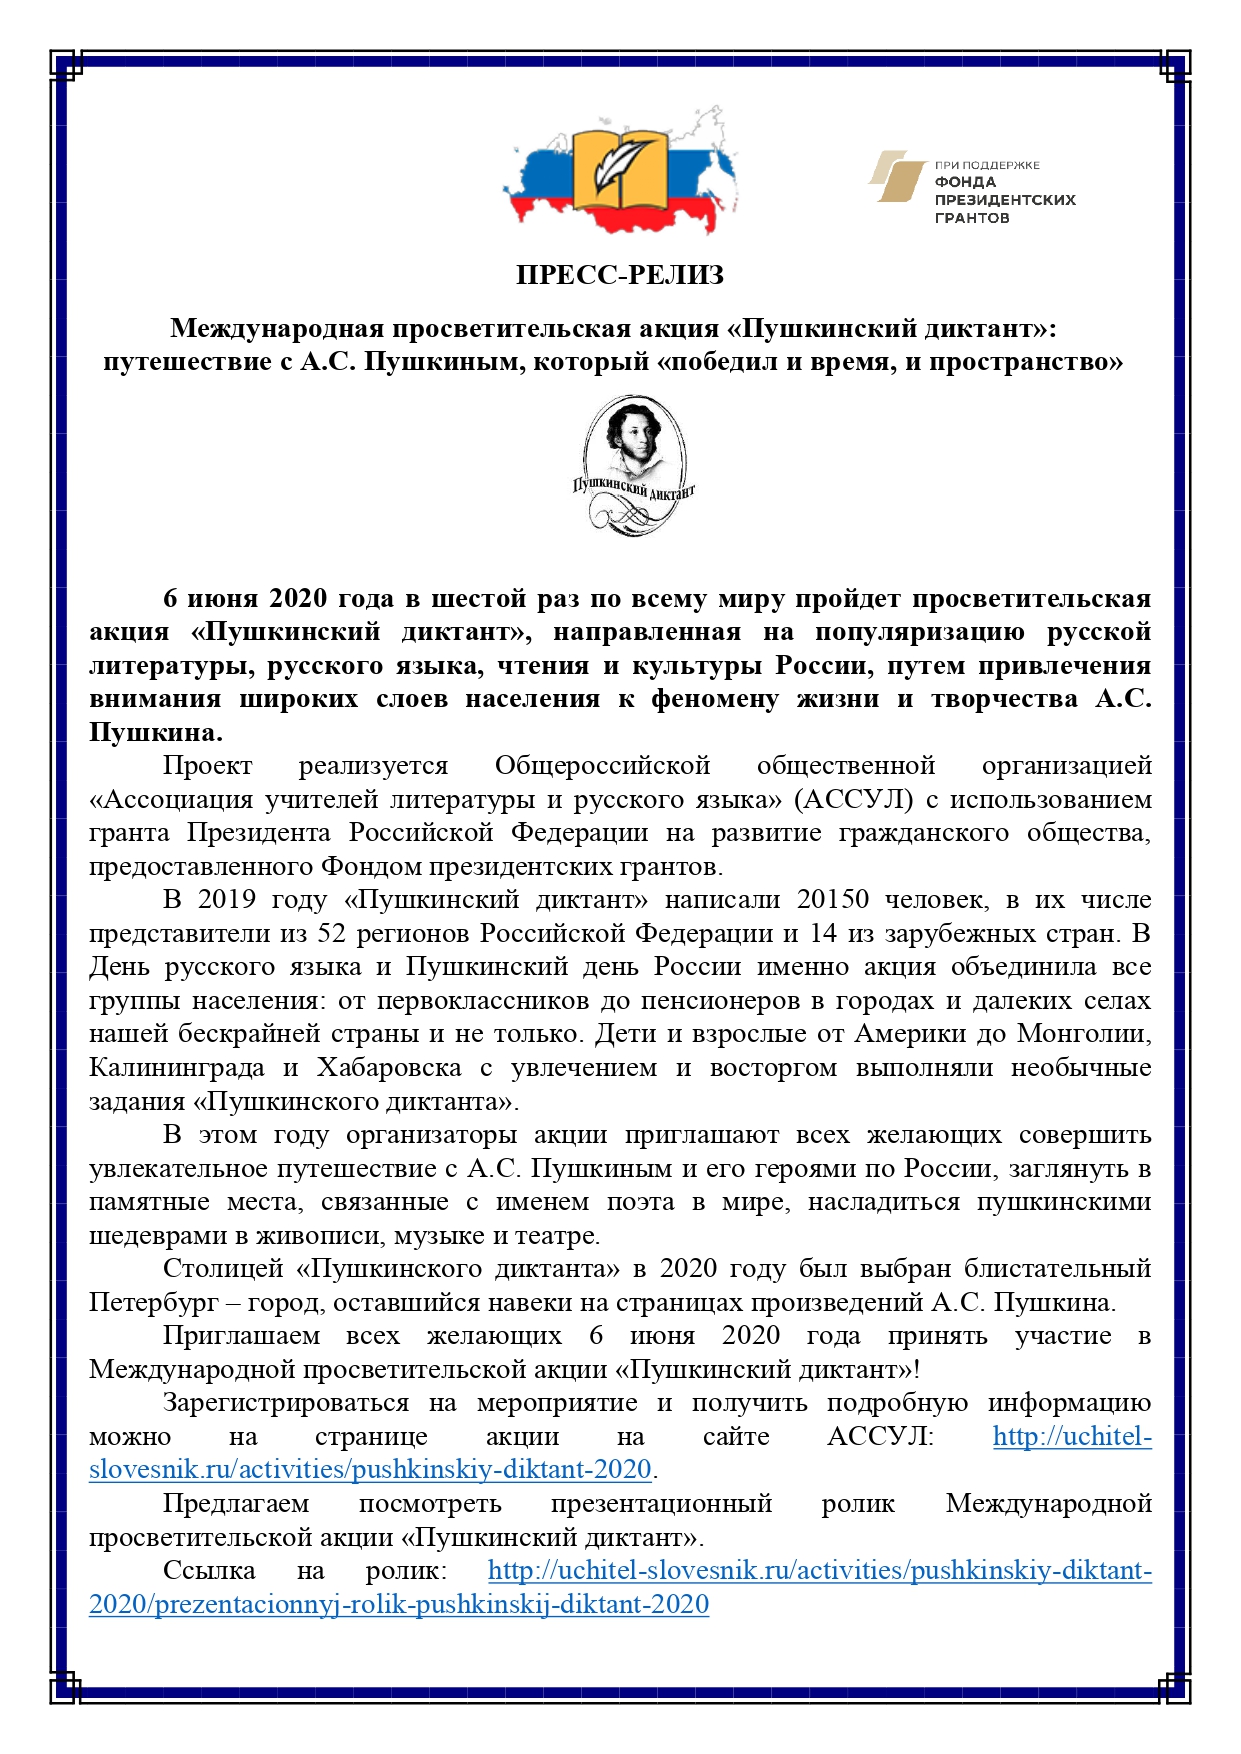 Пресс релиз Международной просветительской акции Пушкинский диктант page 0001